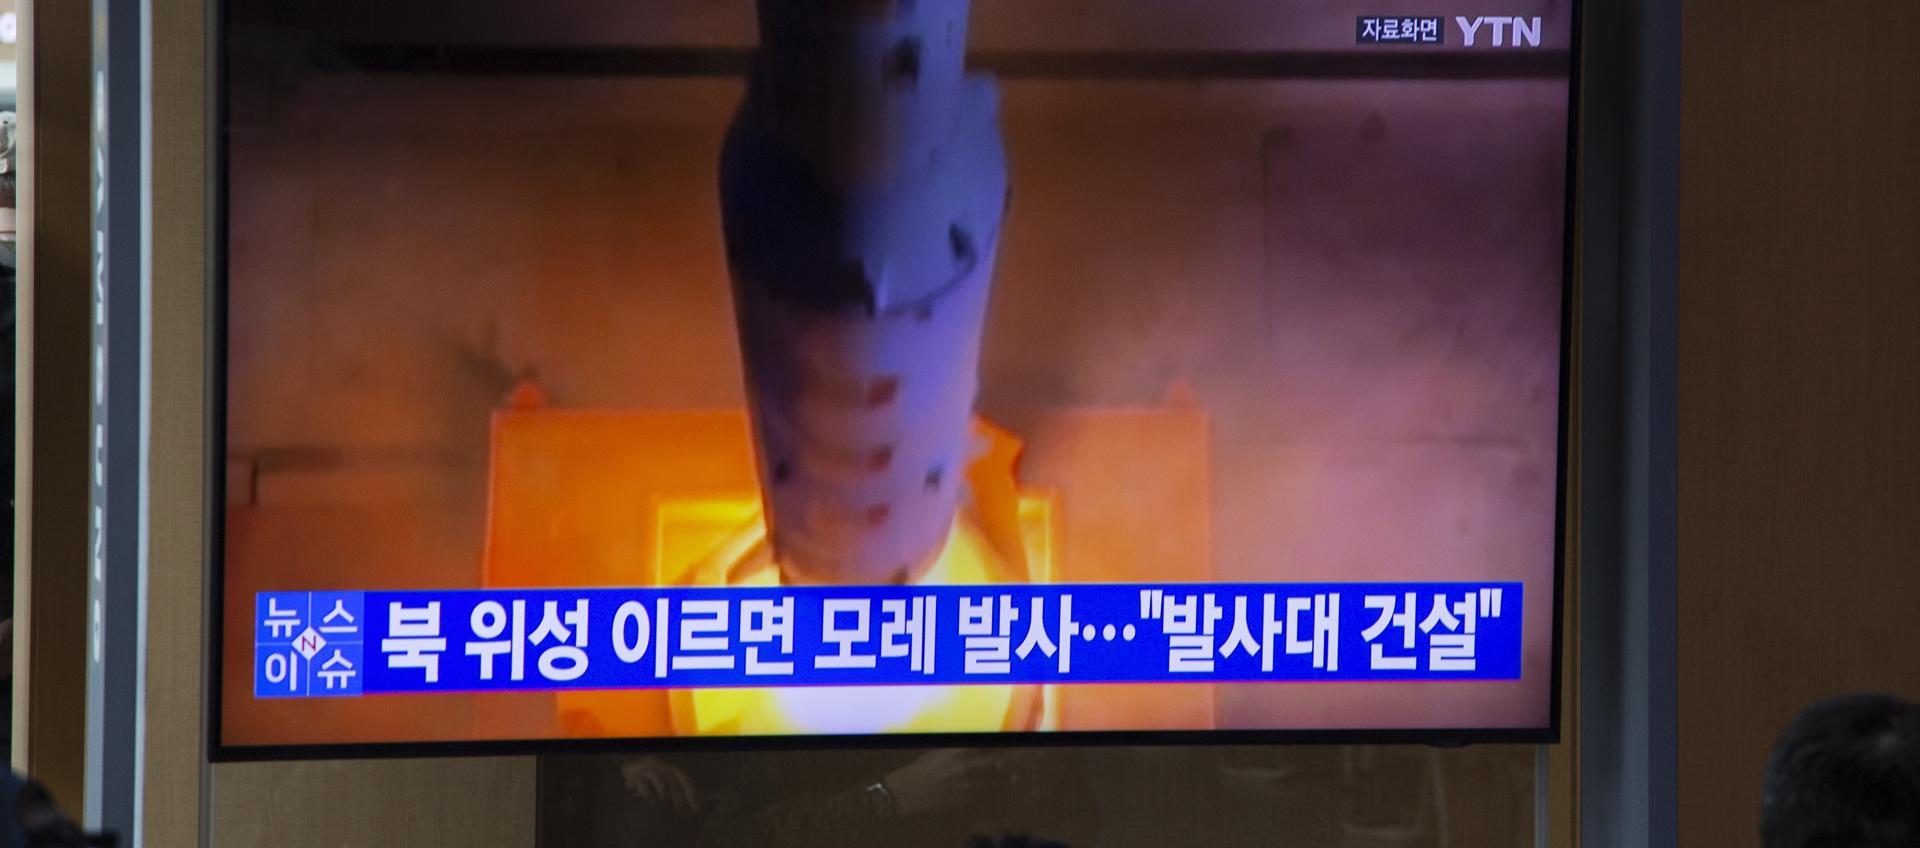 El cohete espacial lanzado este martes por Corea del Norte